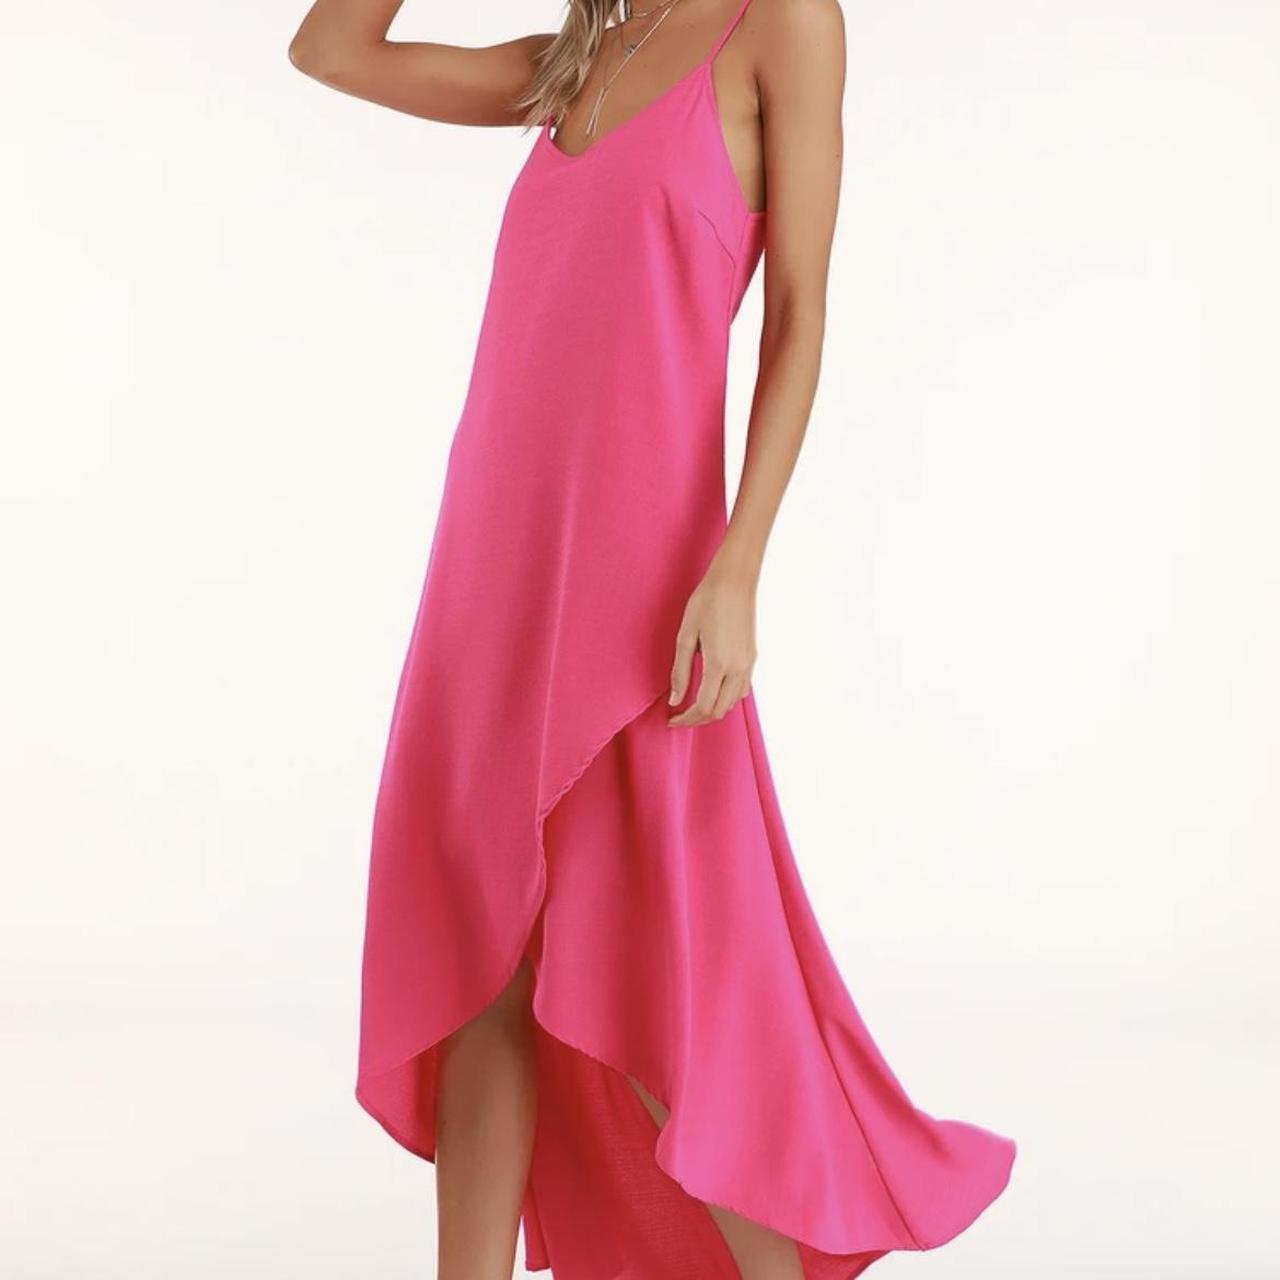 Lulus Women's Pink Dress | Depop